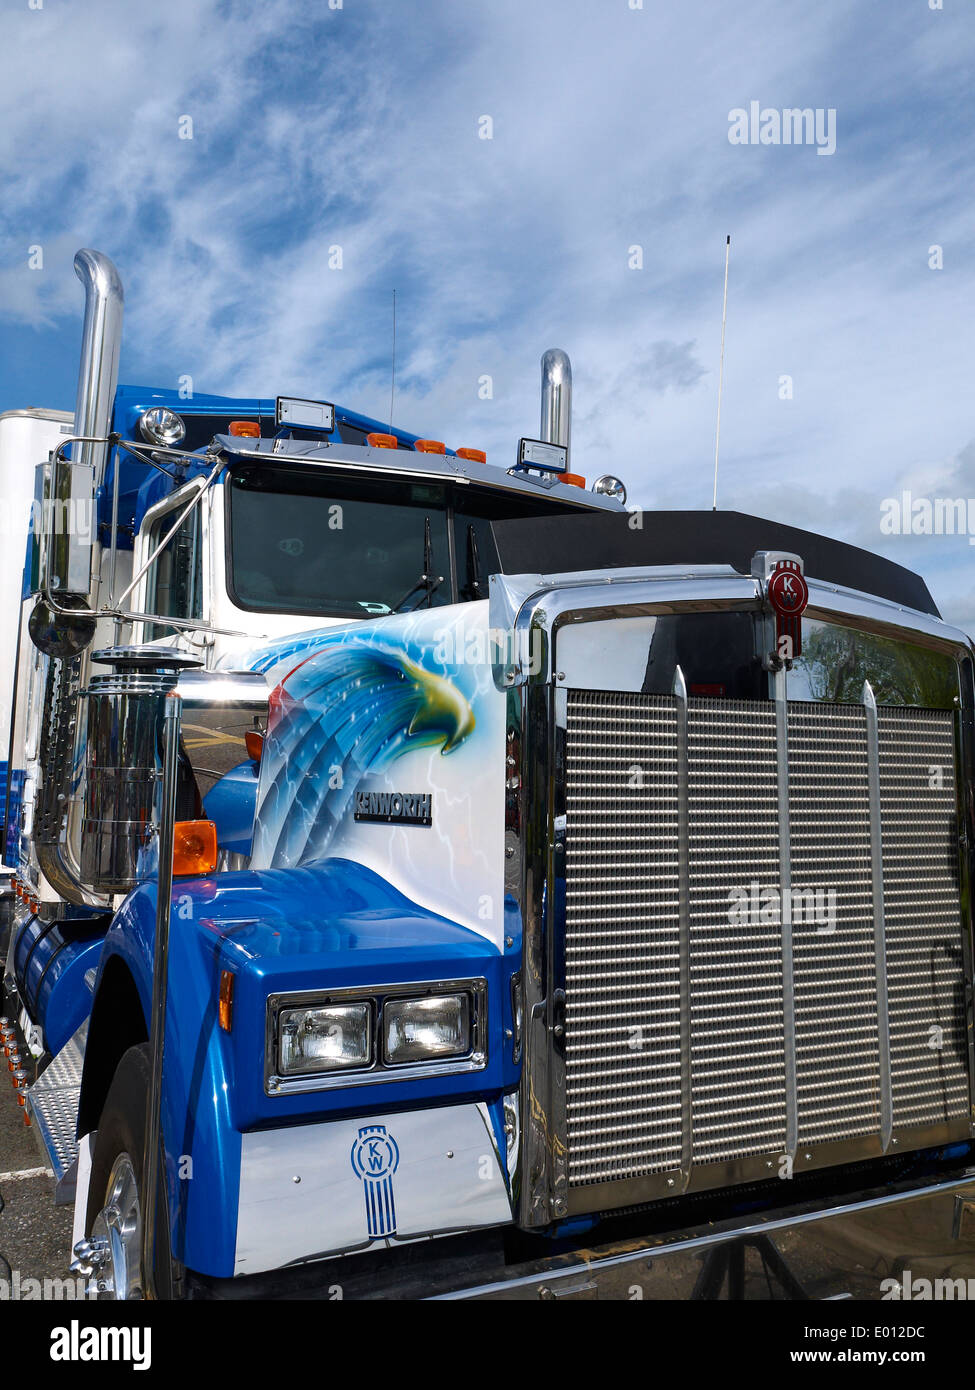 Image - EXCLUSIF KENWORTH  AMERICAN DREAM  - La passion du camion  décoré,américain & tuning - Skyrock.com